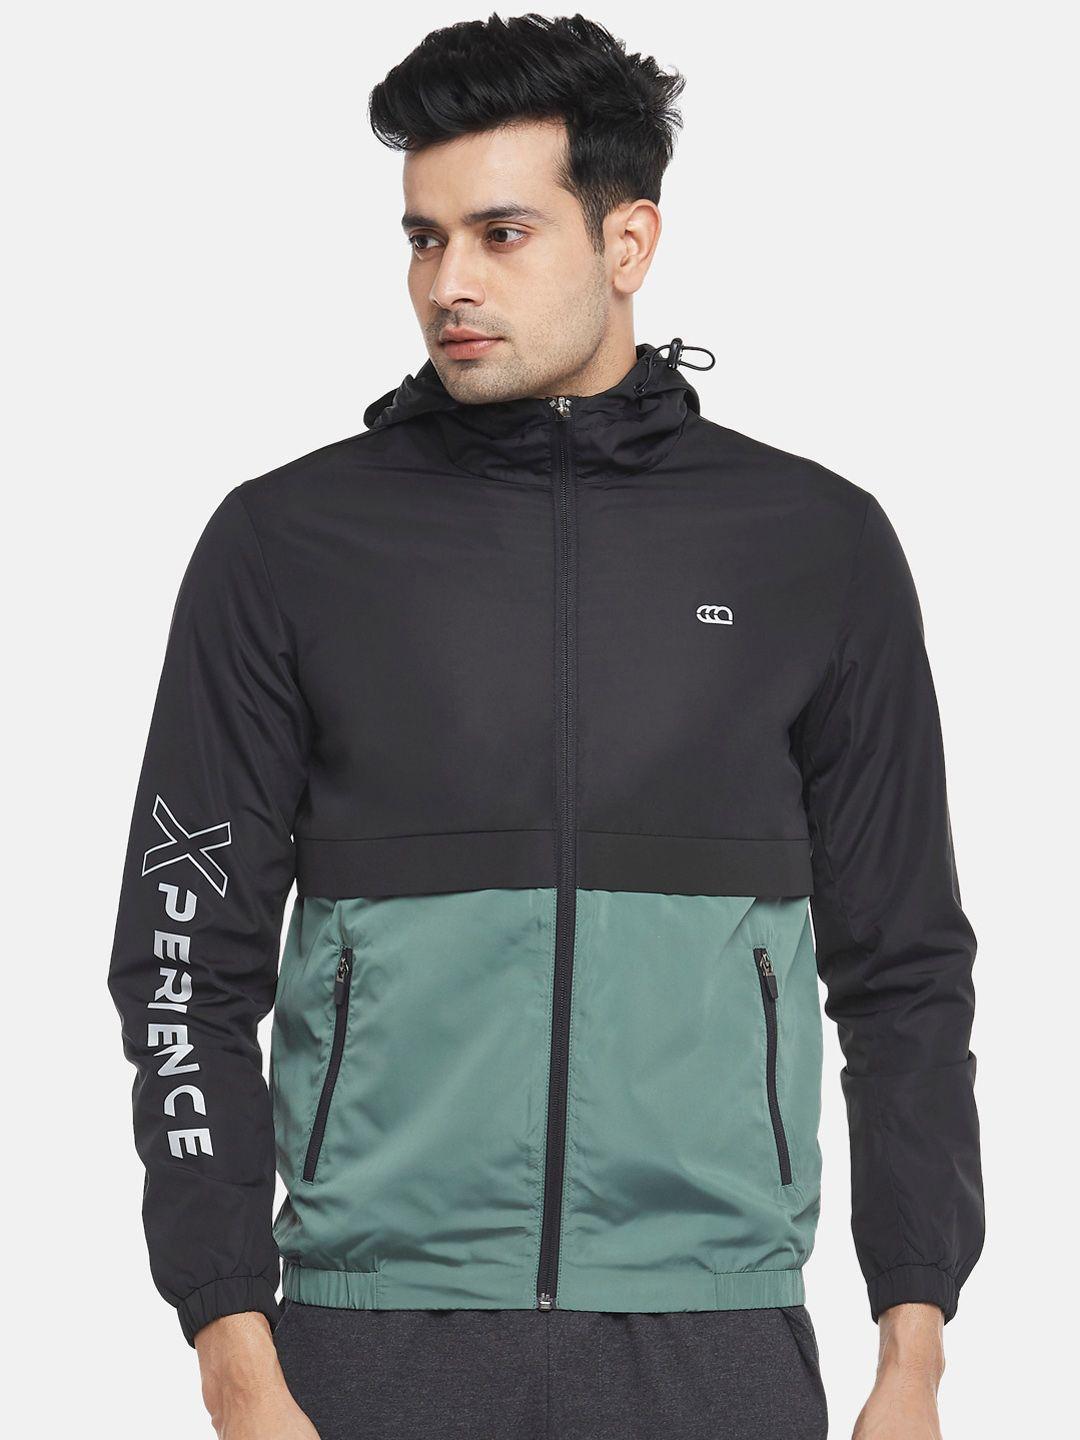 ajile by pantaloons men black colourblocked outdoor sporty jacket